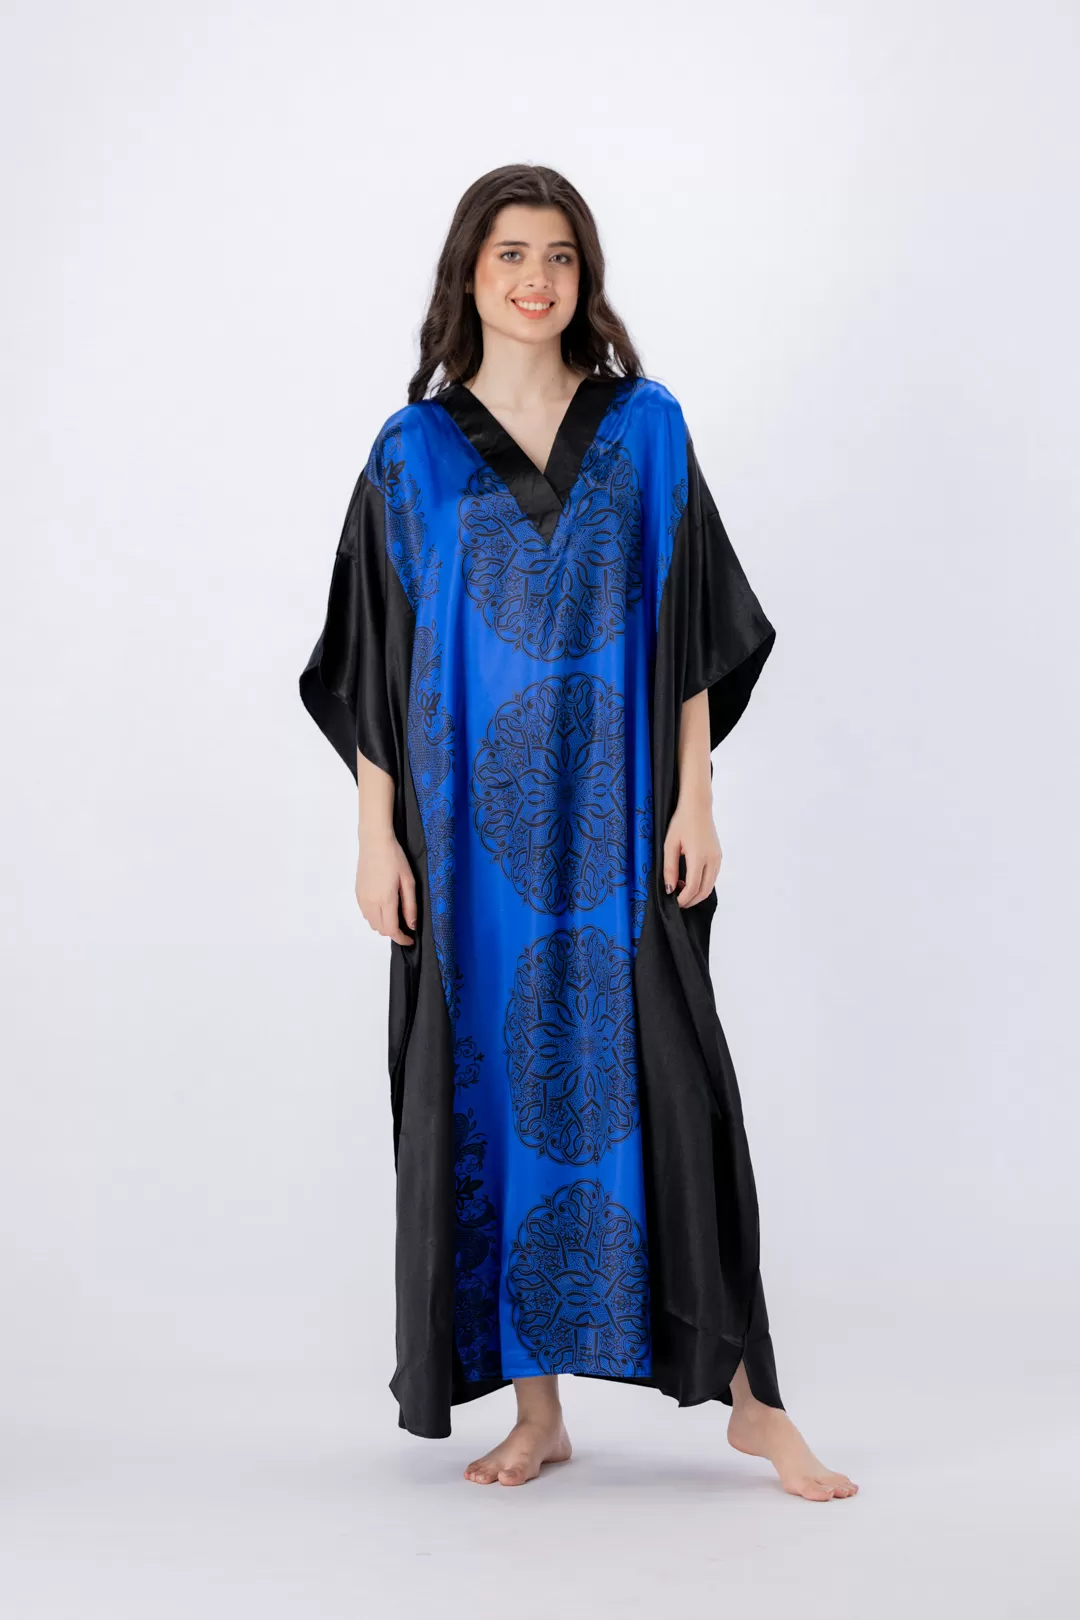 Valerie nightwear/sleepwear kaftan dress is specially designed for women who prefer a simple modern casual style